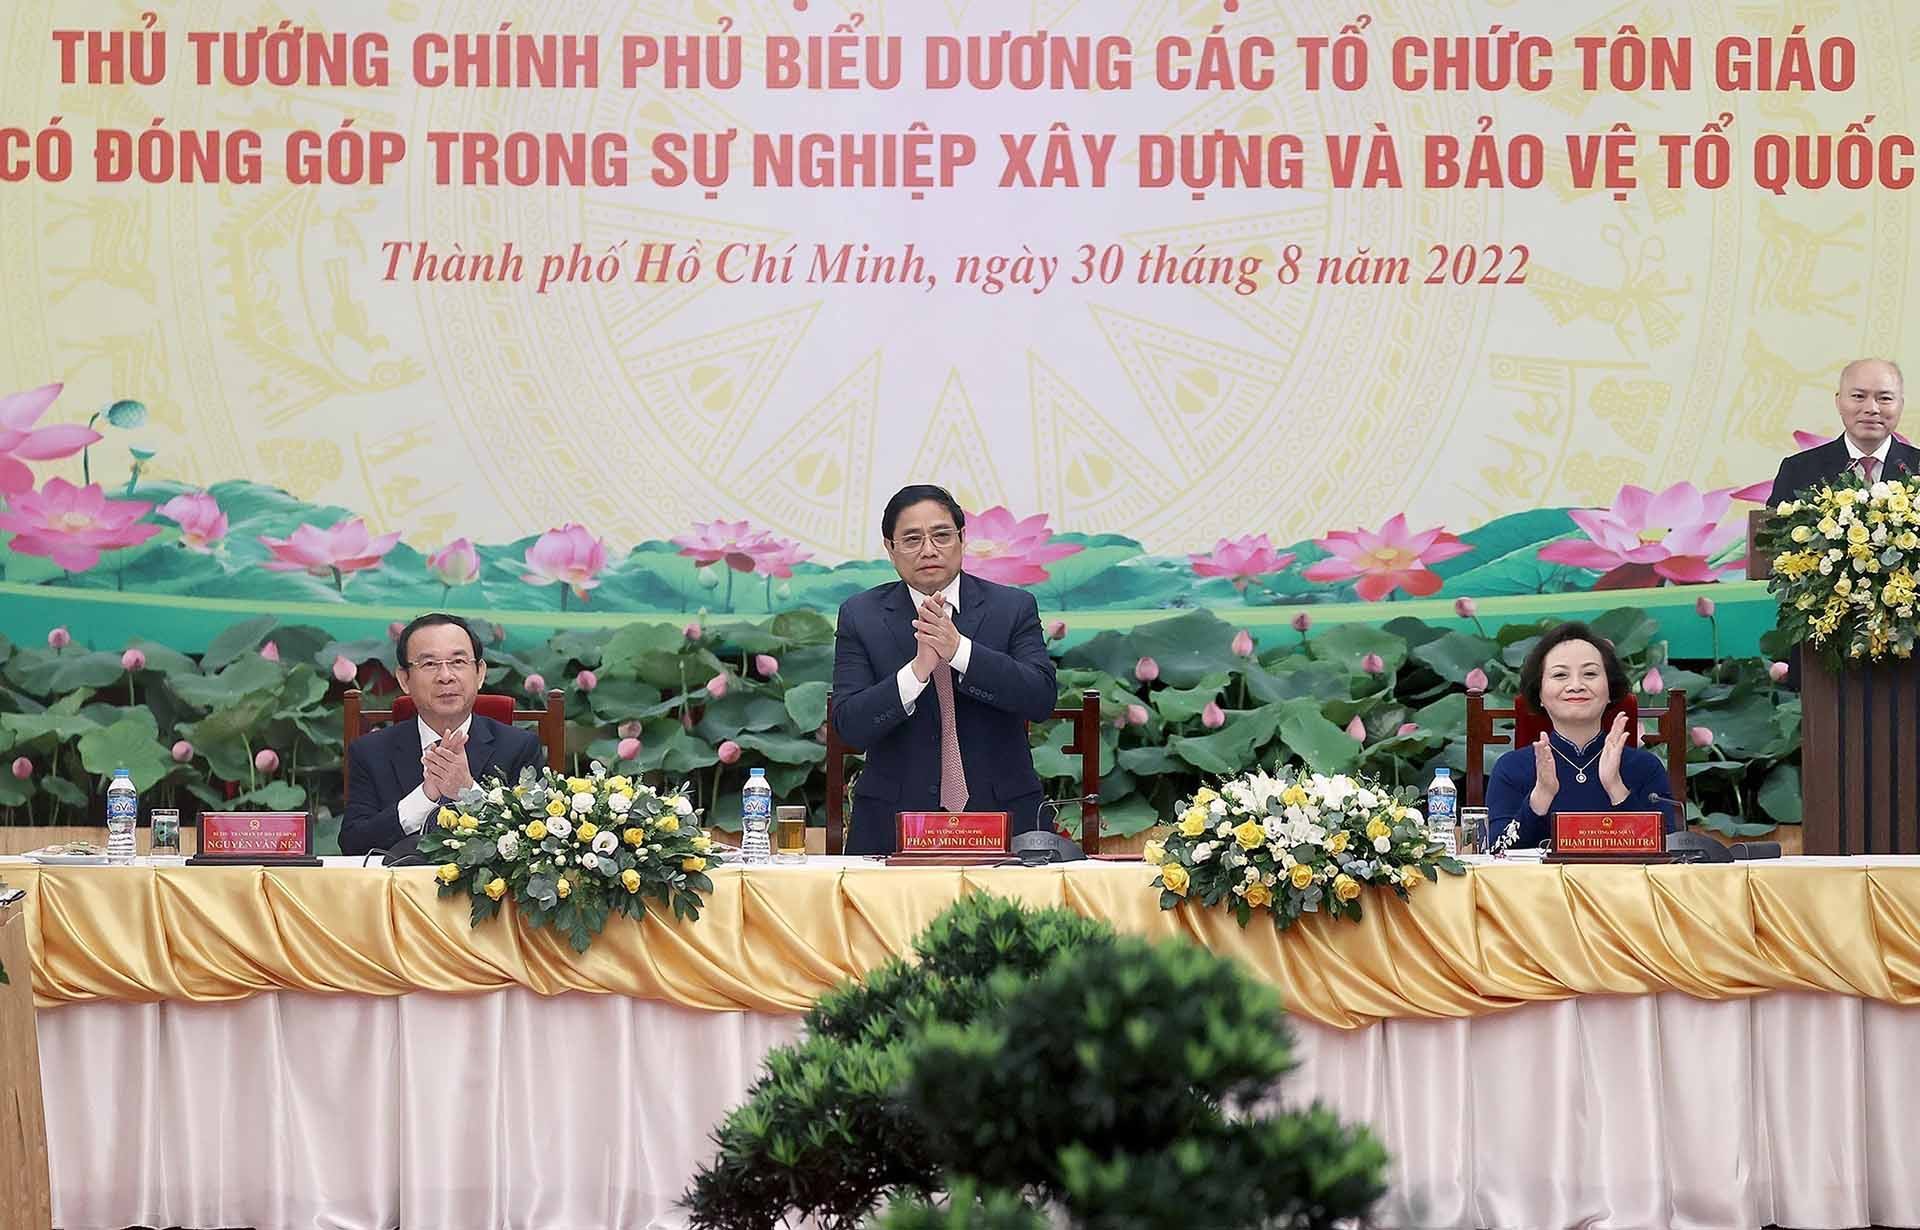 Thủ tướng Phạm Minh Chính chủ trì Hội nghị biểu dương các tổ chức tôn giáo có đóng góp trong sự nghiệp xây dựng và bảo vệ Tổ quốc.